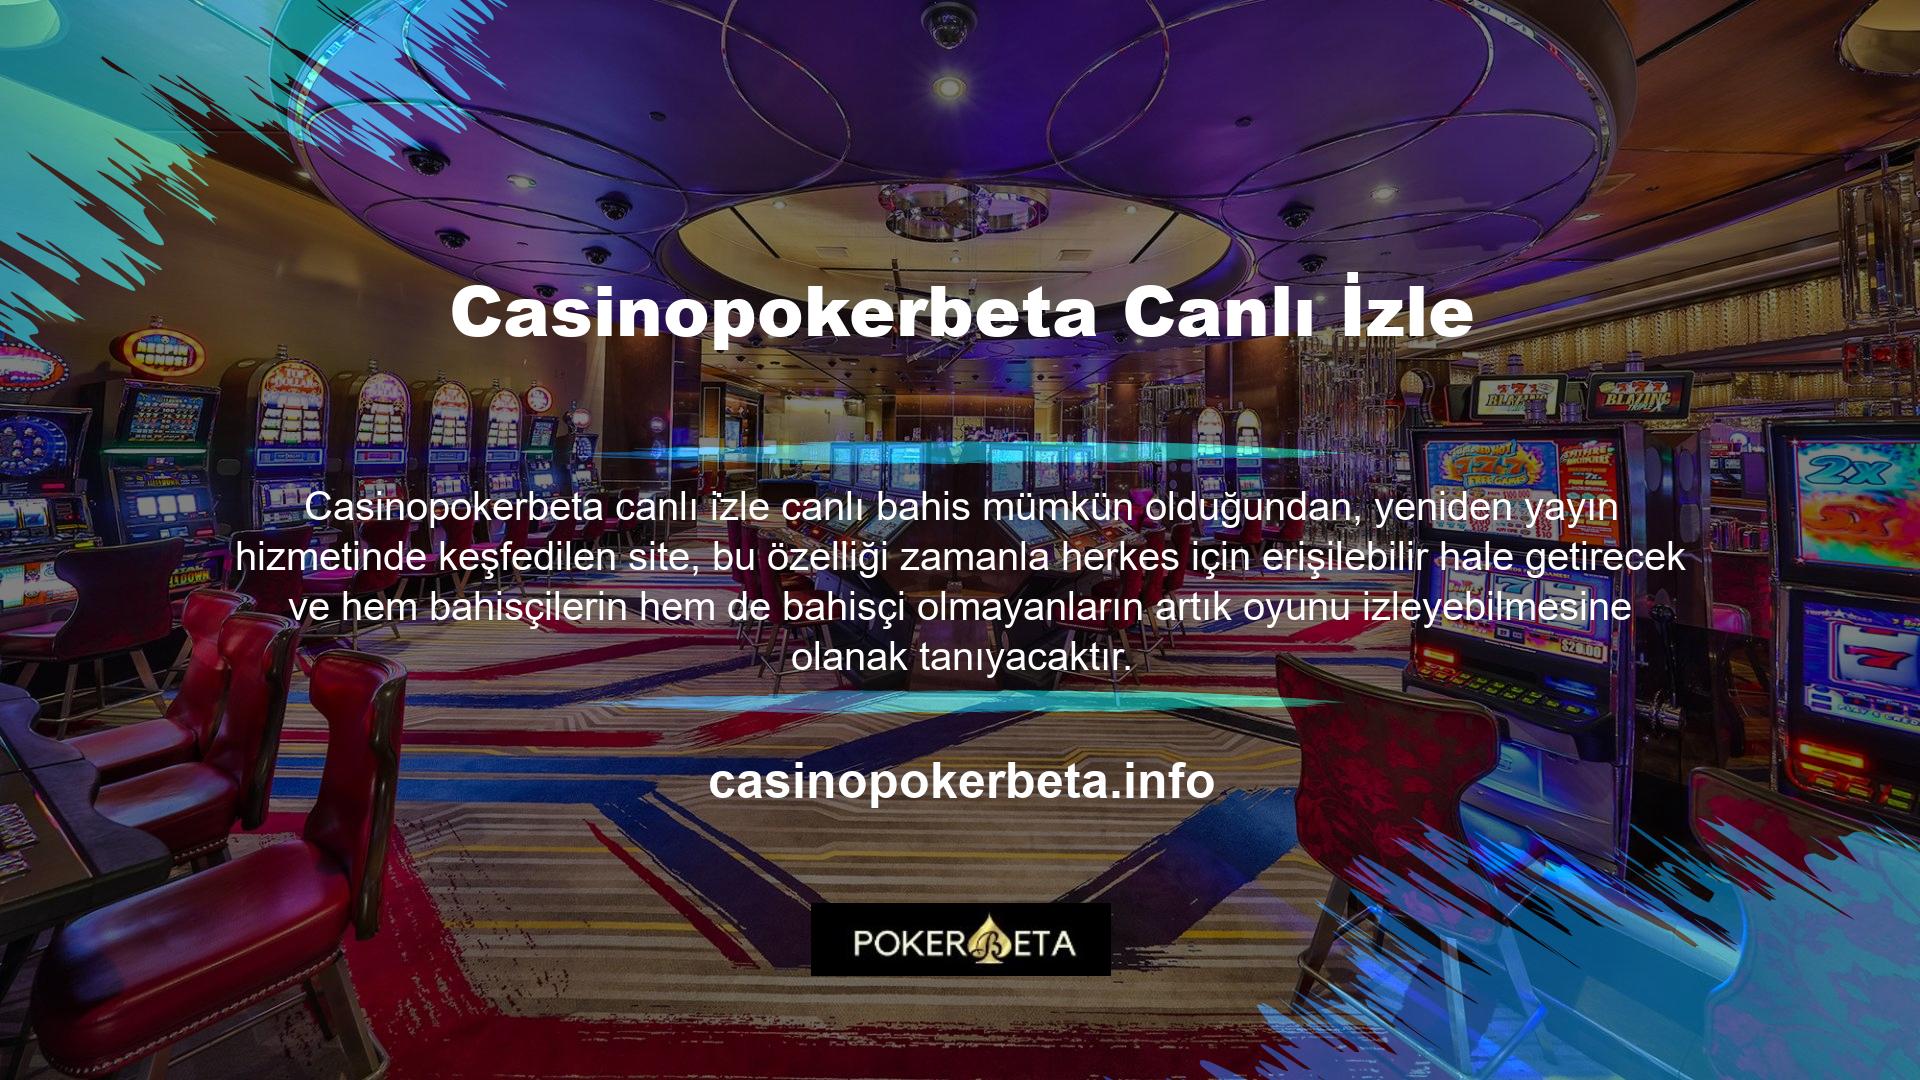 Casinopokerbeta canlı bahis sitesi kurulduğu günden bu yana maçların canlı yayınlarını sunmaktadır